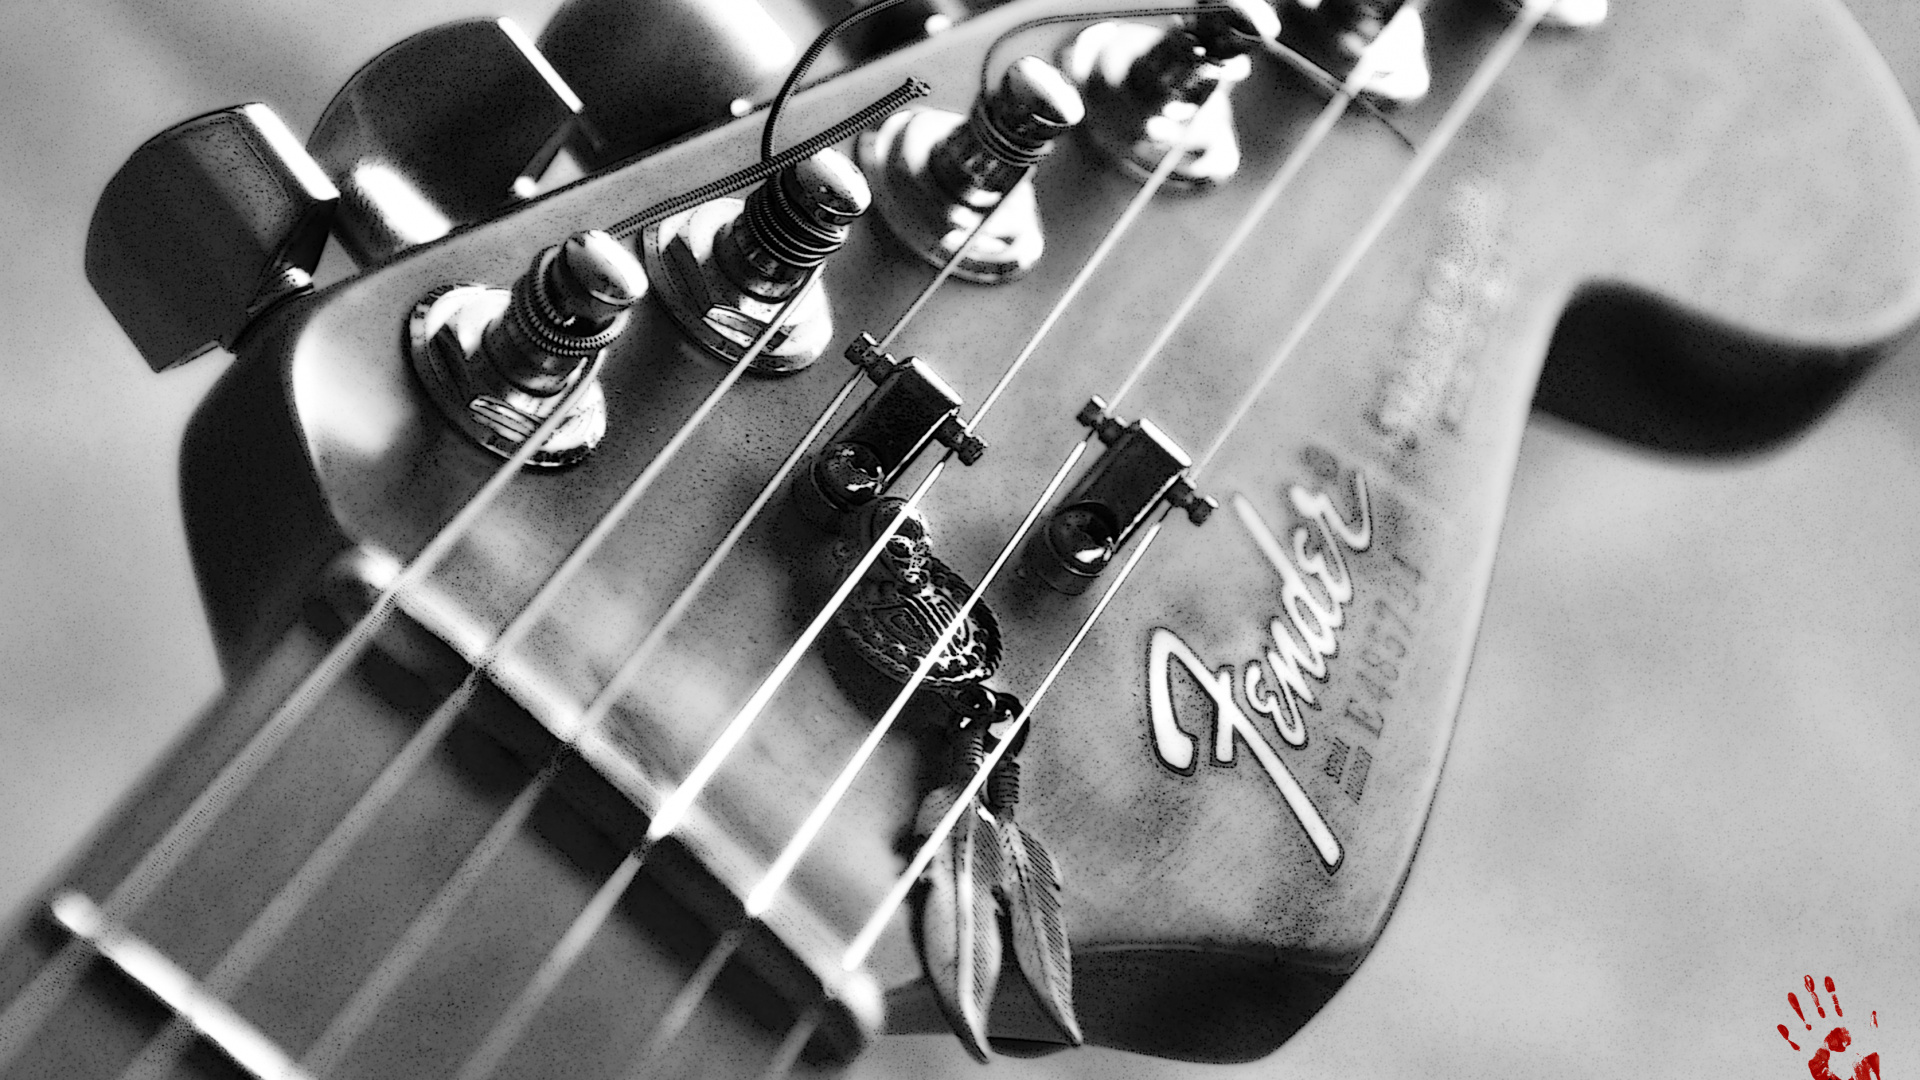 Gitarre, Fender Telecaster, Bass, Gezupfte Saiteninstrumente, Fender Standard Stratocaster. Wallpaper in 1920x1080 Resolution